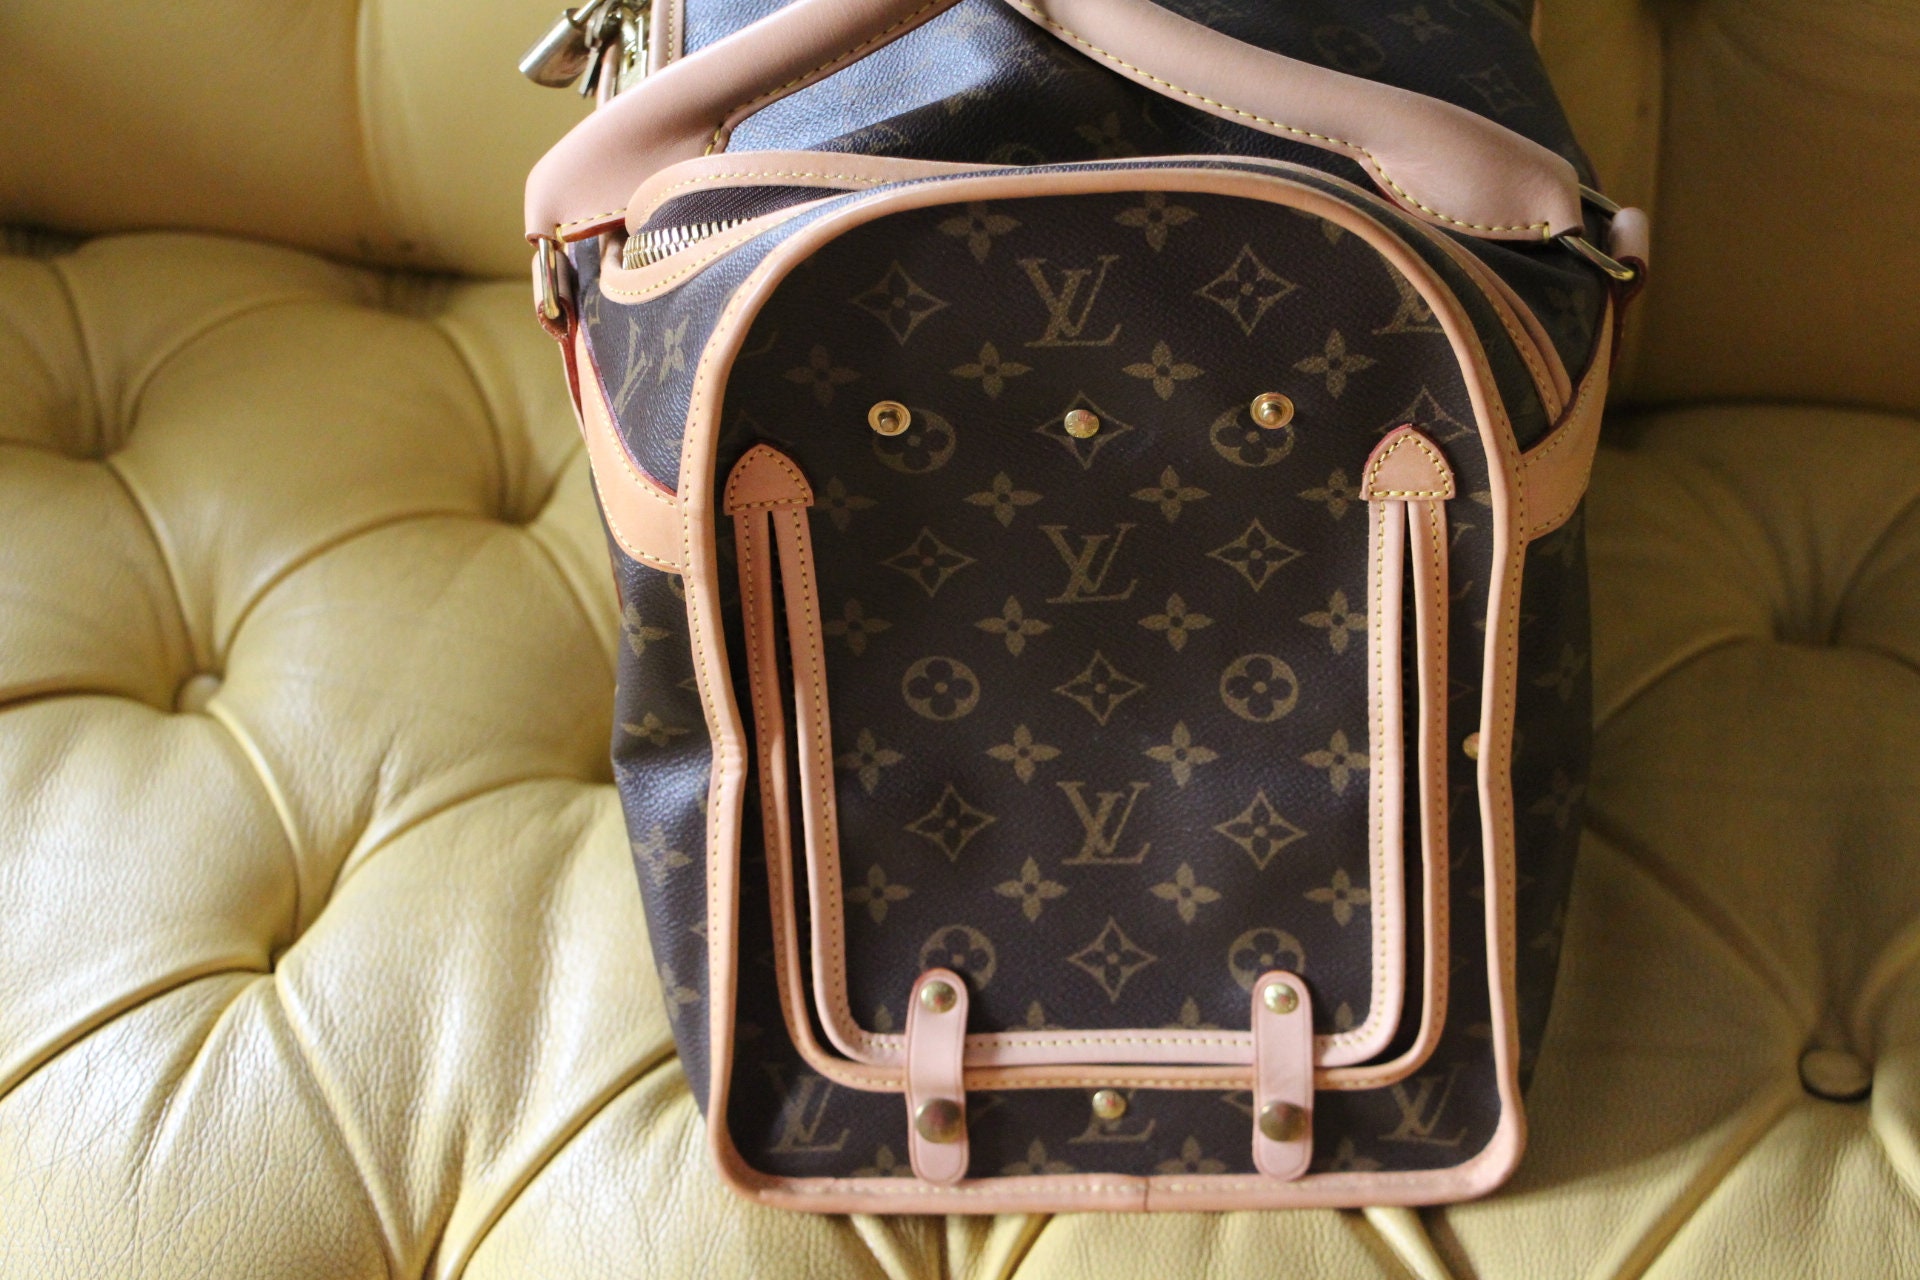 lv dog backpack